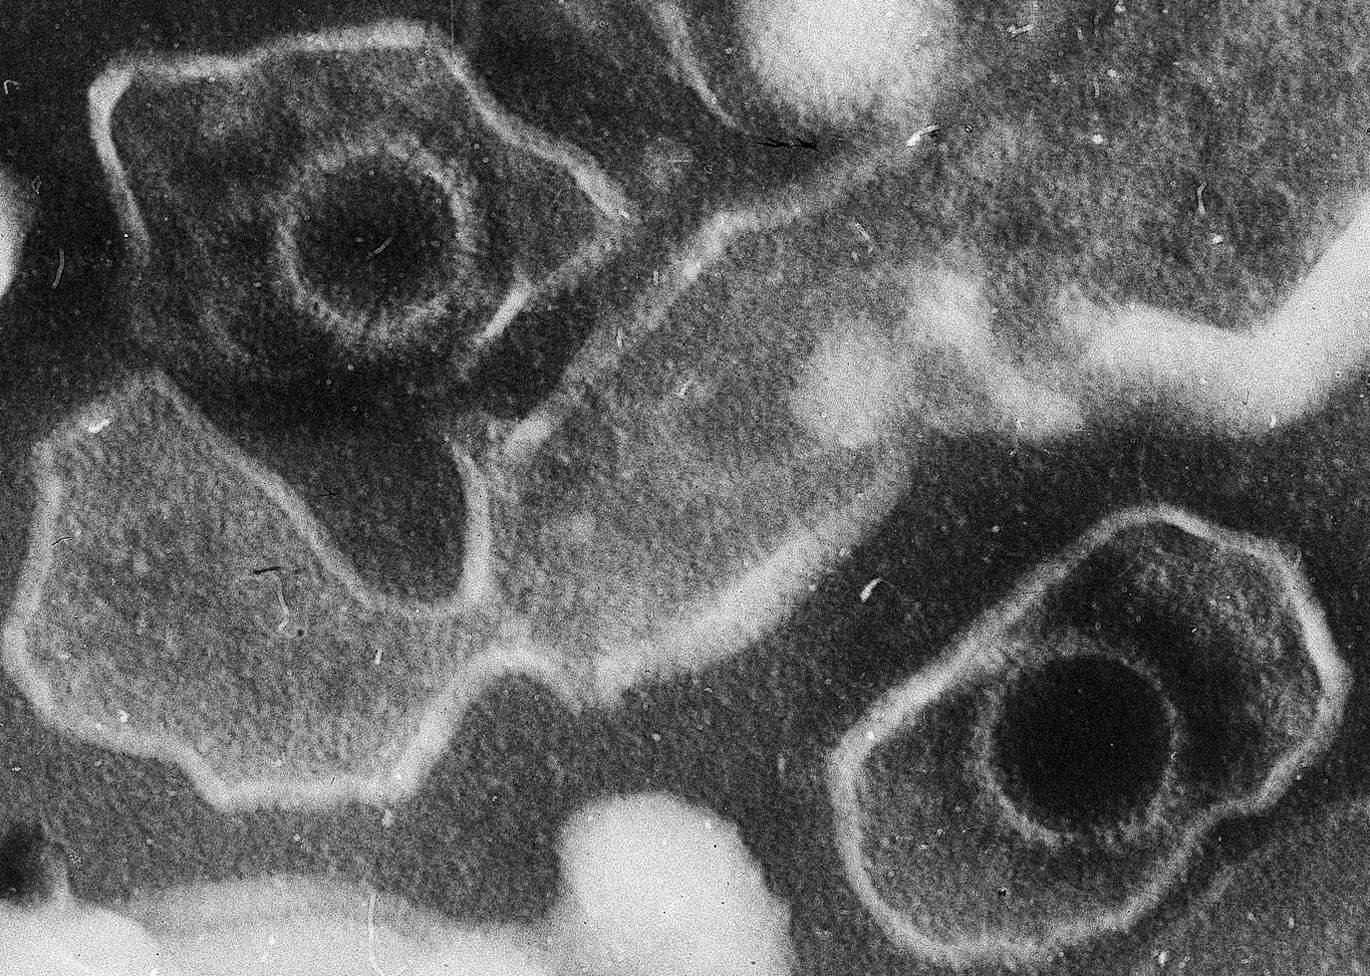 Az Epstein–Barr-vírus lehet a sclerosis multiplex fő okozója